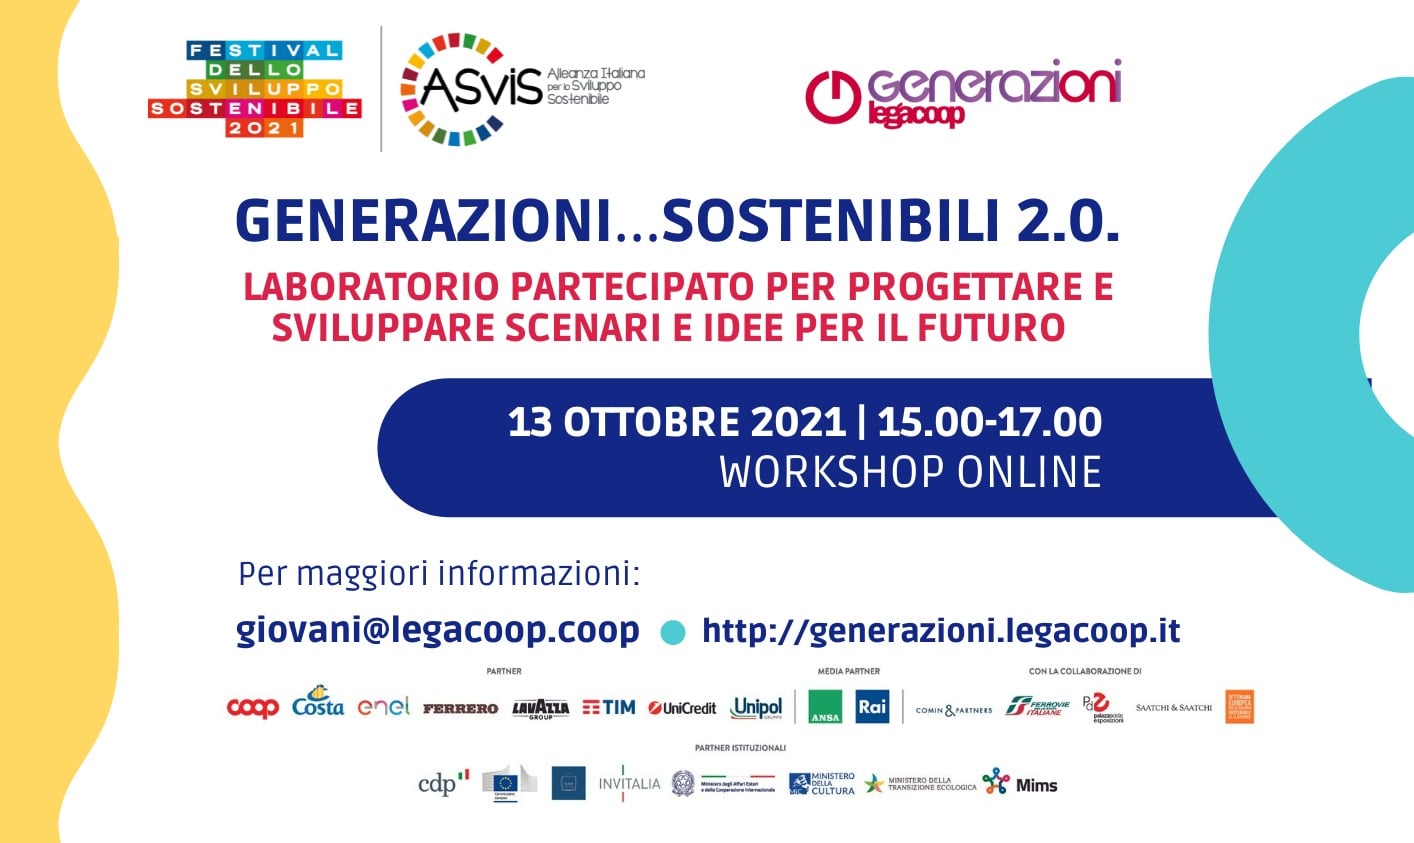 Generazioni…sostenibili 2.0. Mercoledì 13 ottobre evento on-line nell’ambito del Festival dello Sviluppo Sostenibile 2021